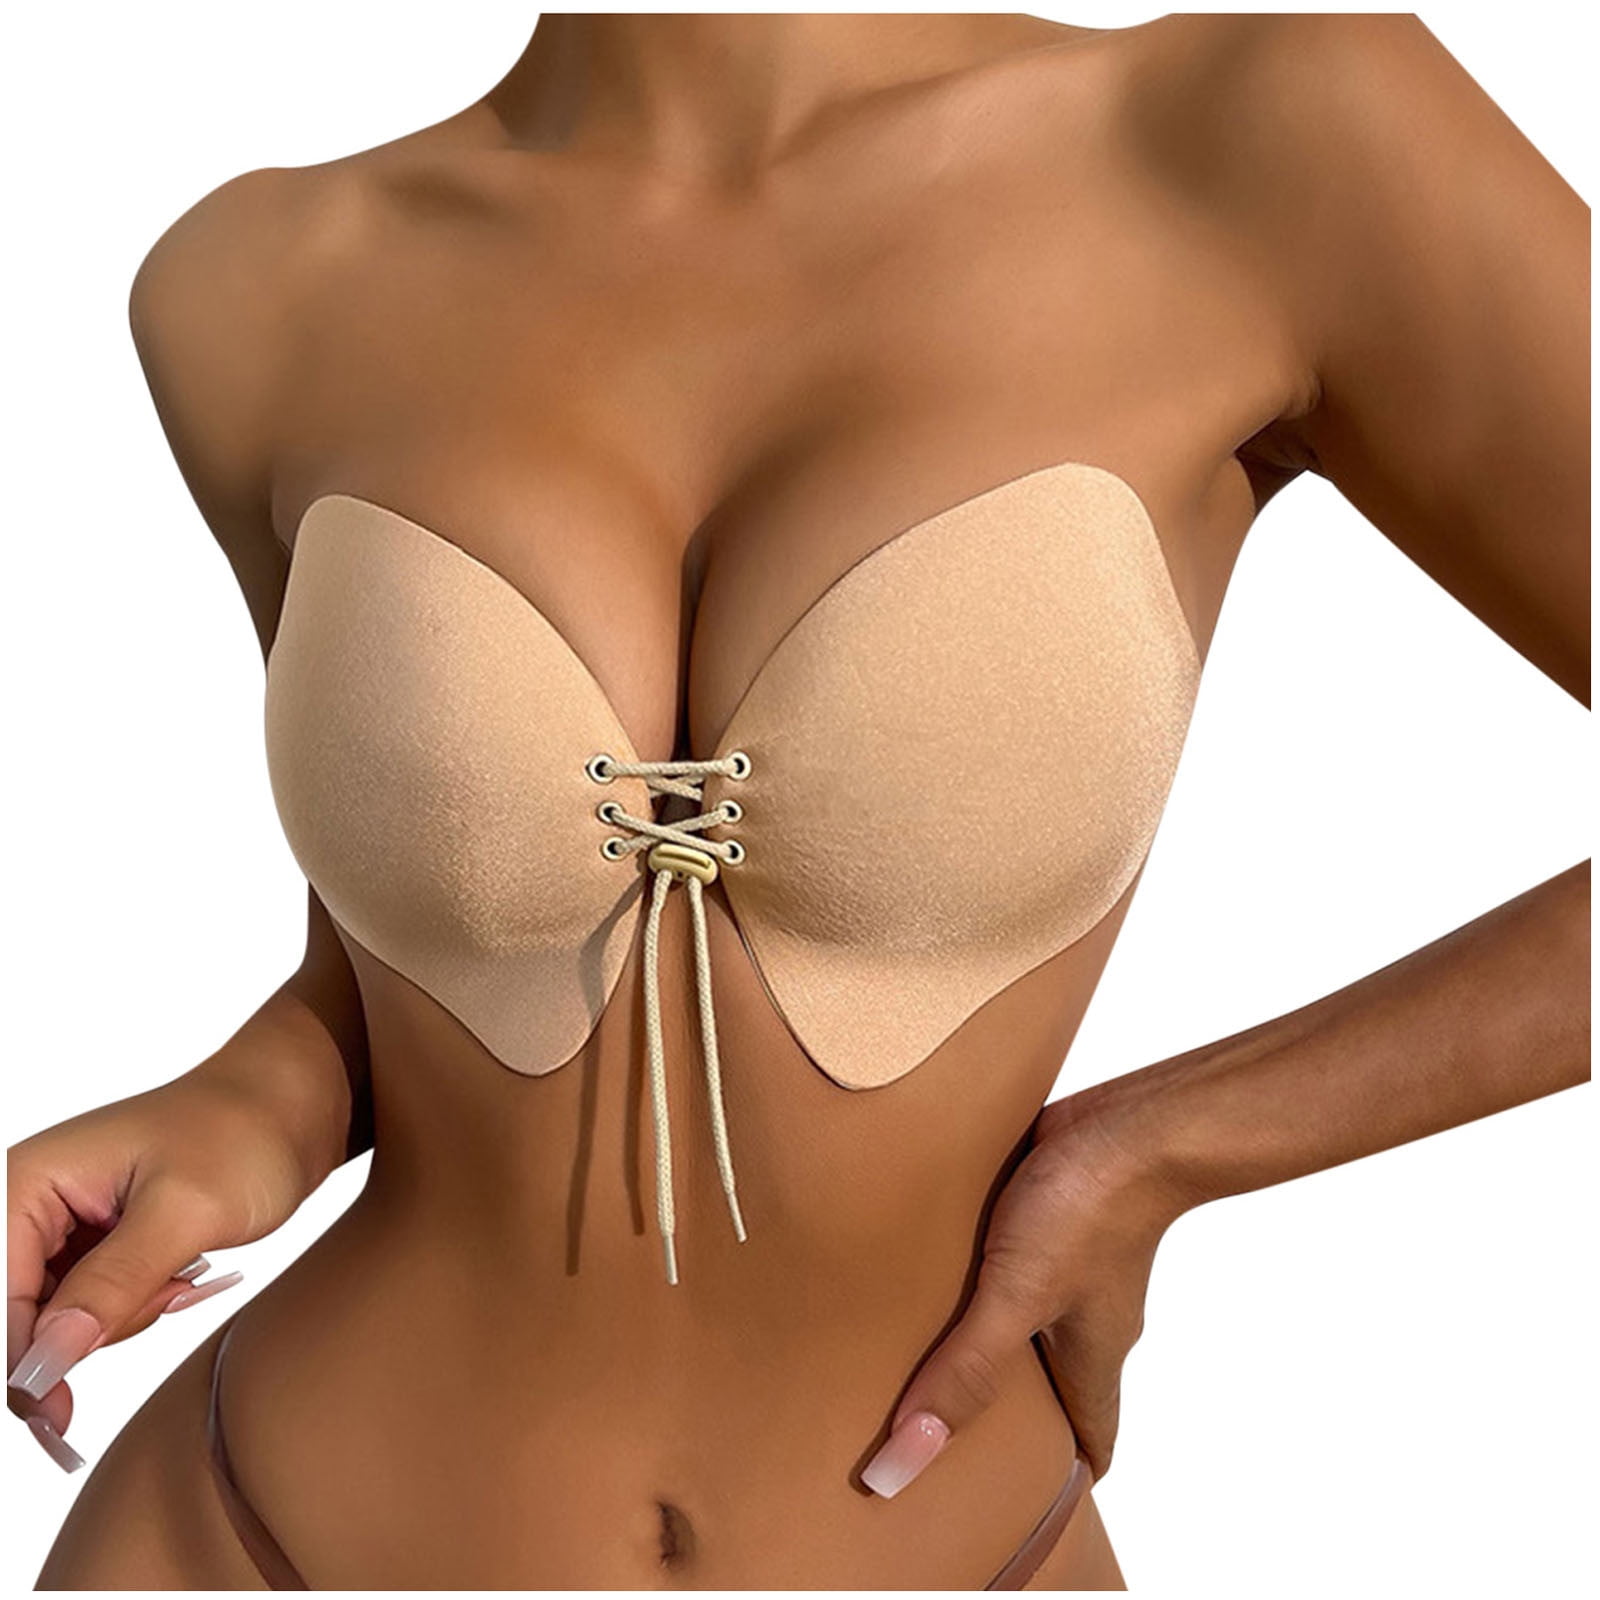 Lolmot Strapless Bras for Women Backless Adhesive Bra Strapless